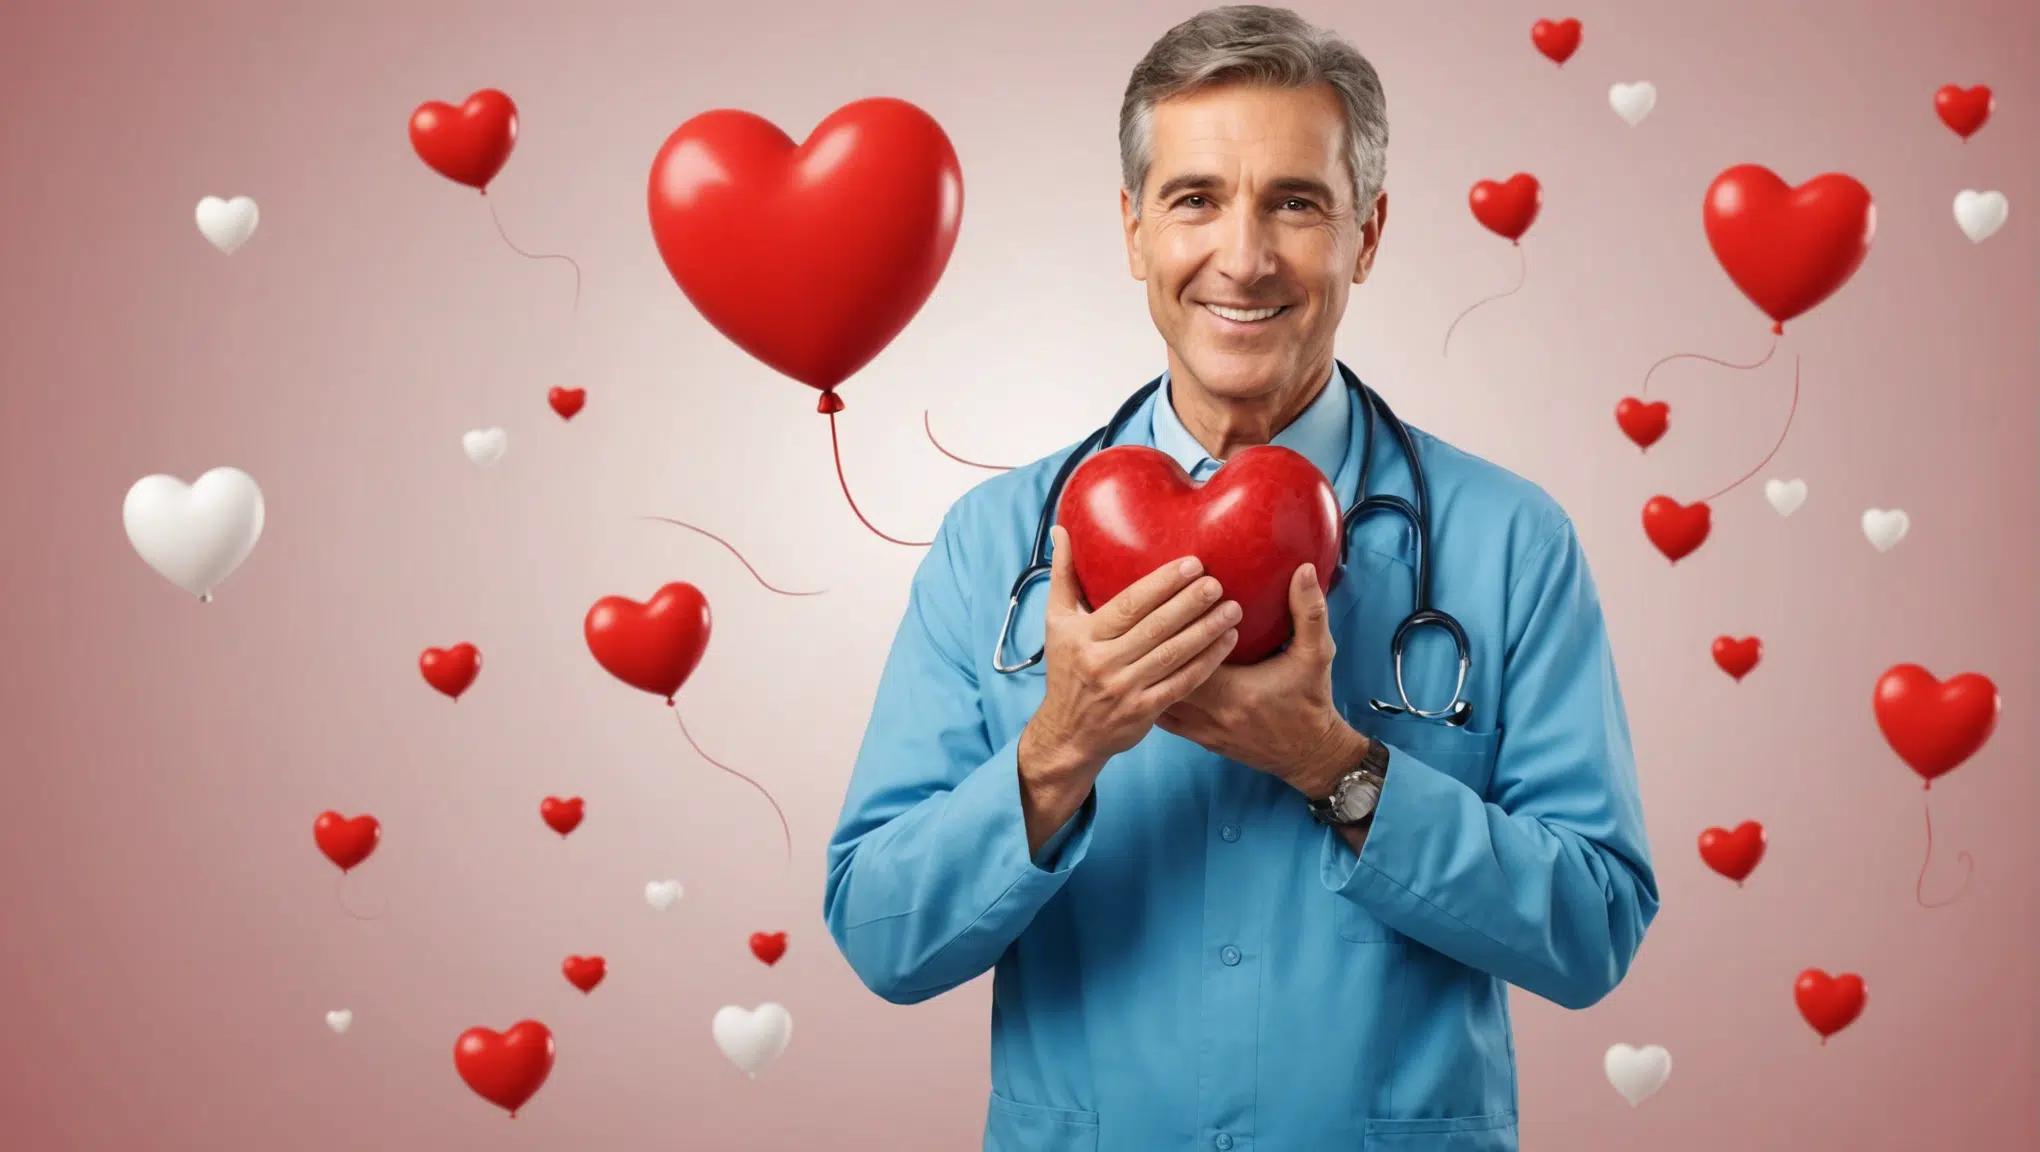 découvrez nos conseils pour prendre soin de votre santé cardiaque au quotidien et prévenir les maladies cardiovasculaires.